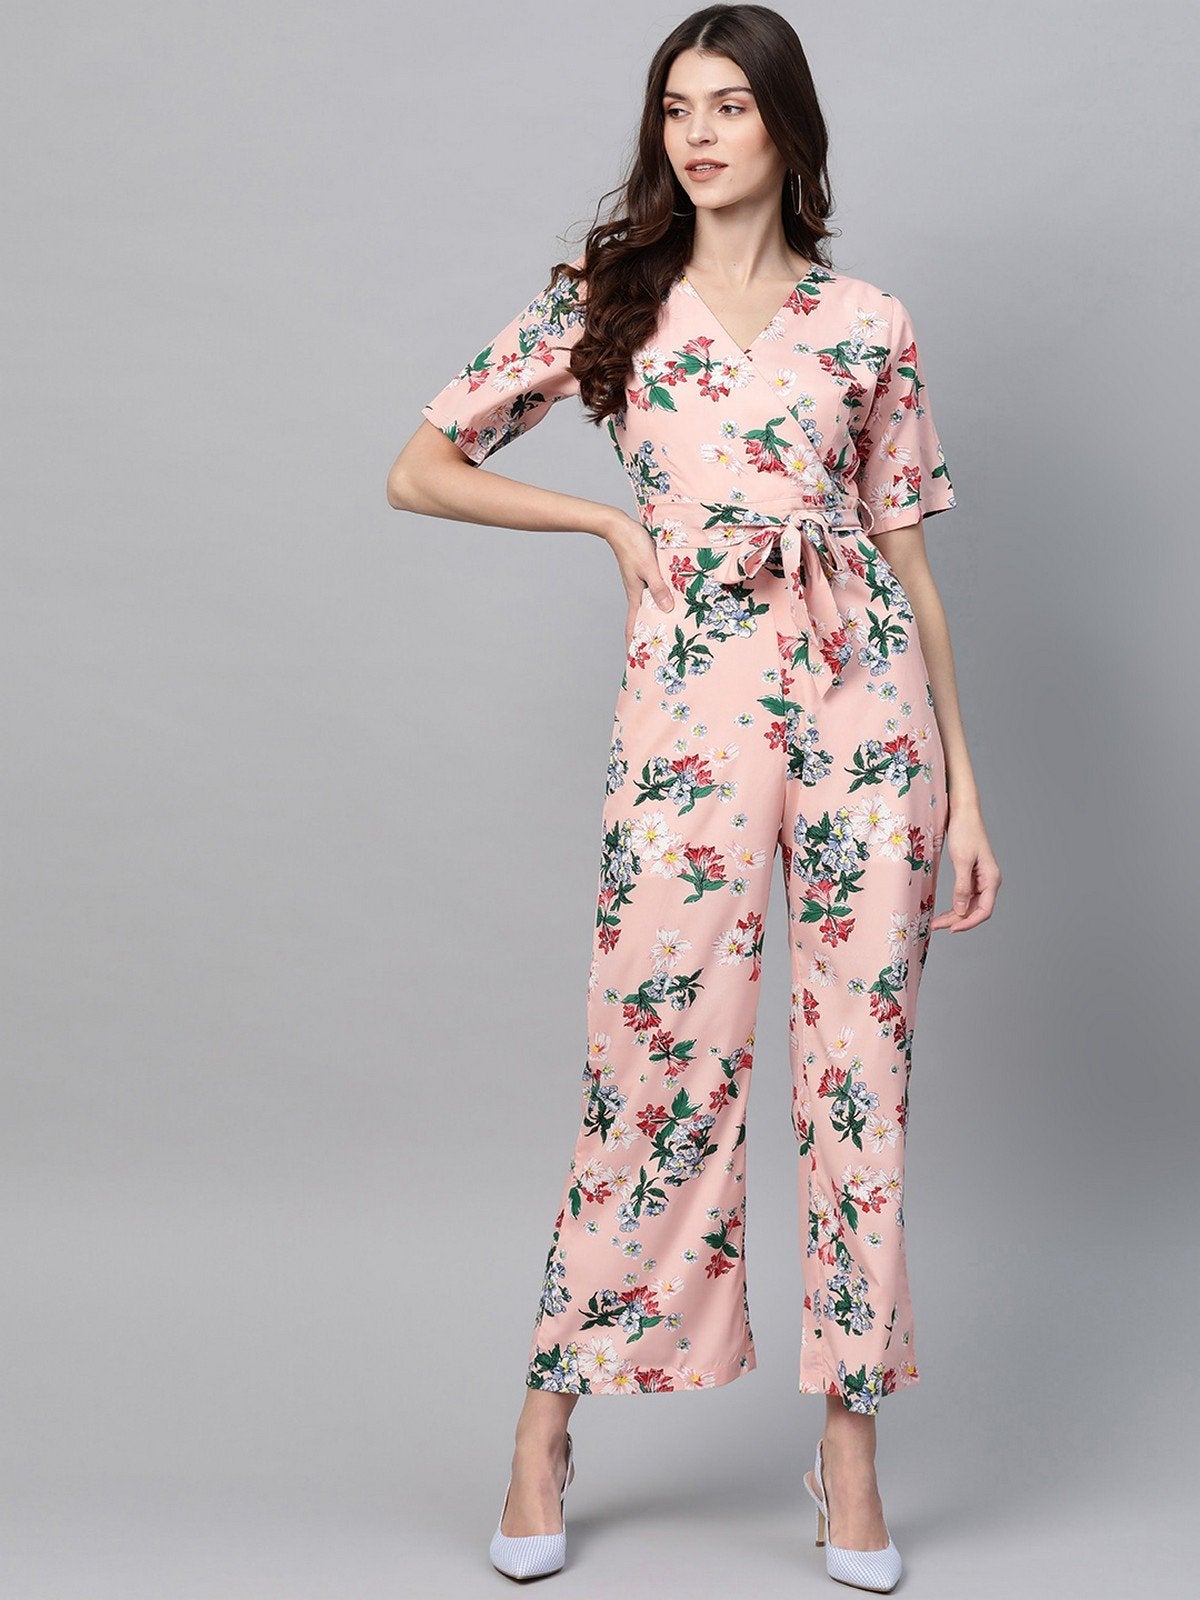 Women's Pastel Floral Printed Jumpsuit - Pannkh